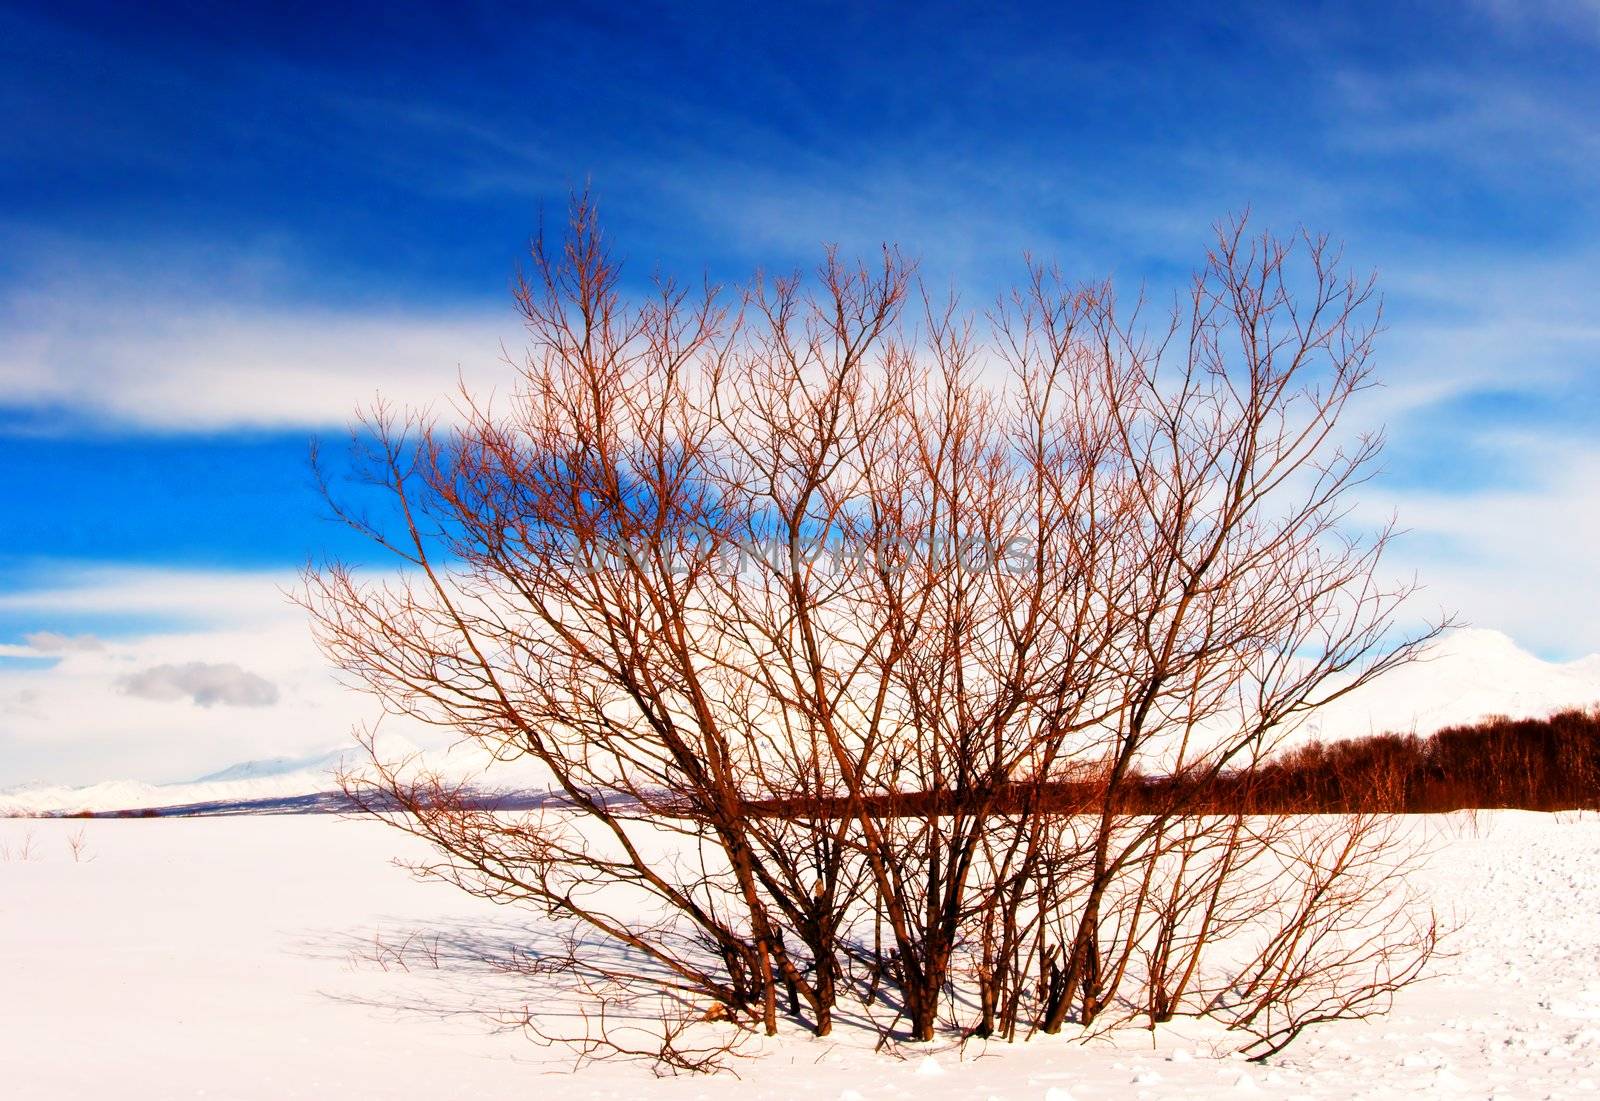 Winter landscape in Russia on Kamchatka in January